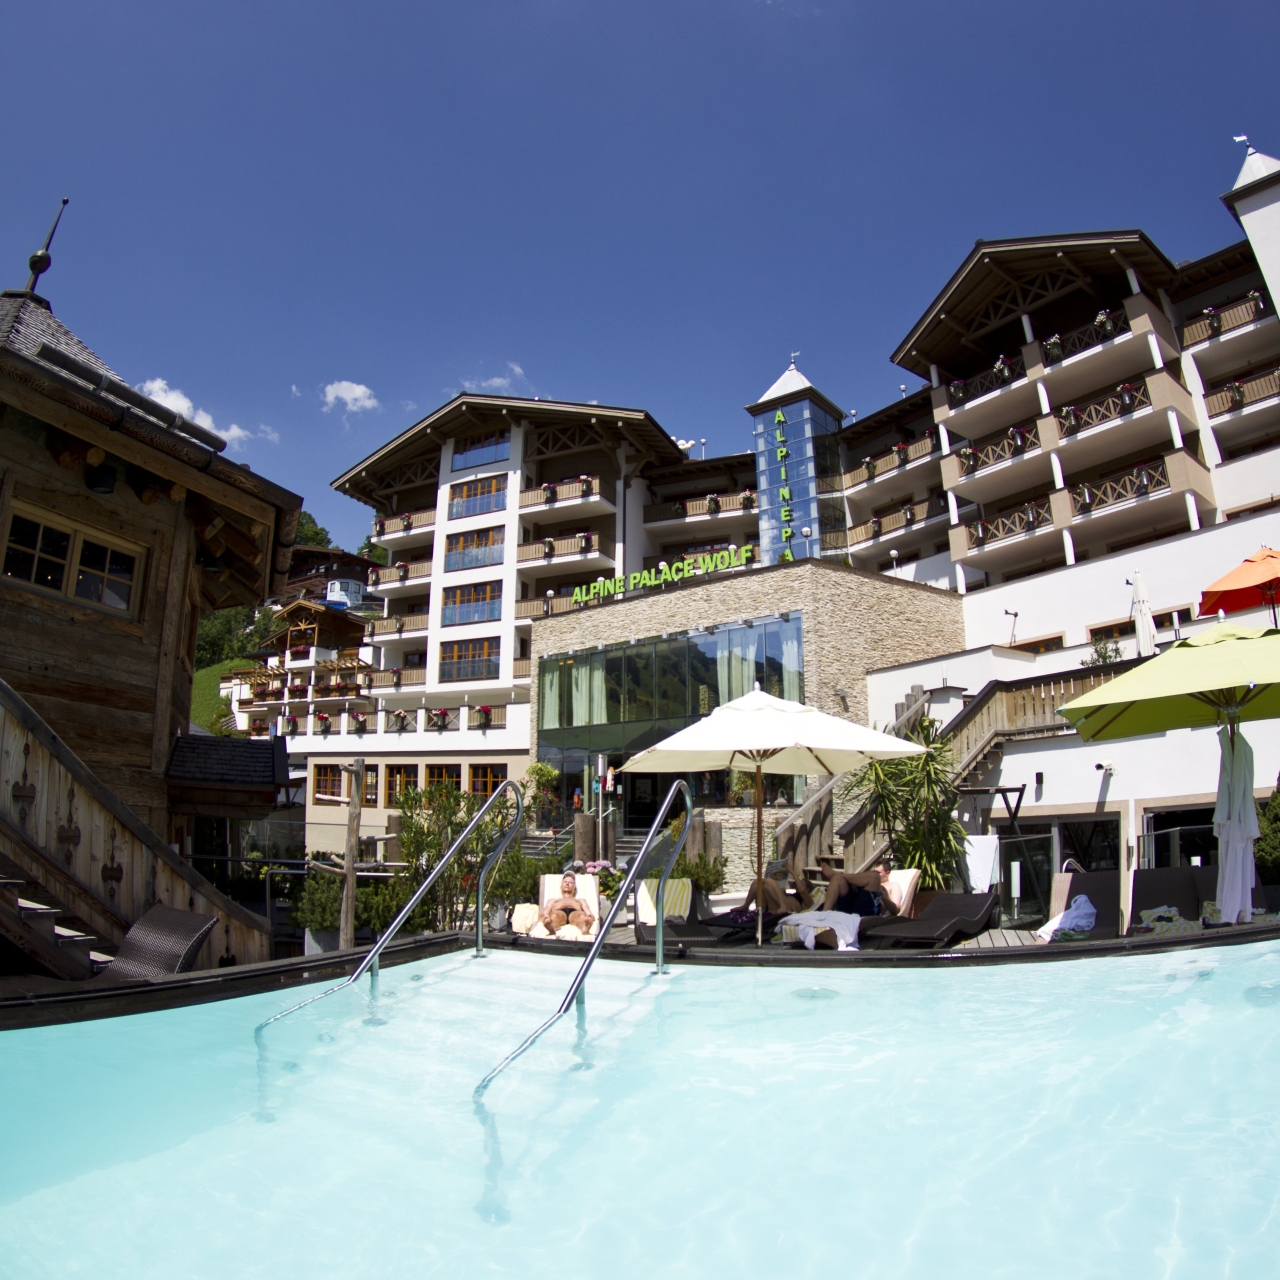 Hotel Alpine Palace - 5 HRS star hotel in Hinterglemm, Saalbach-Hinterglemm  (Salzburg)